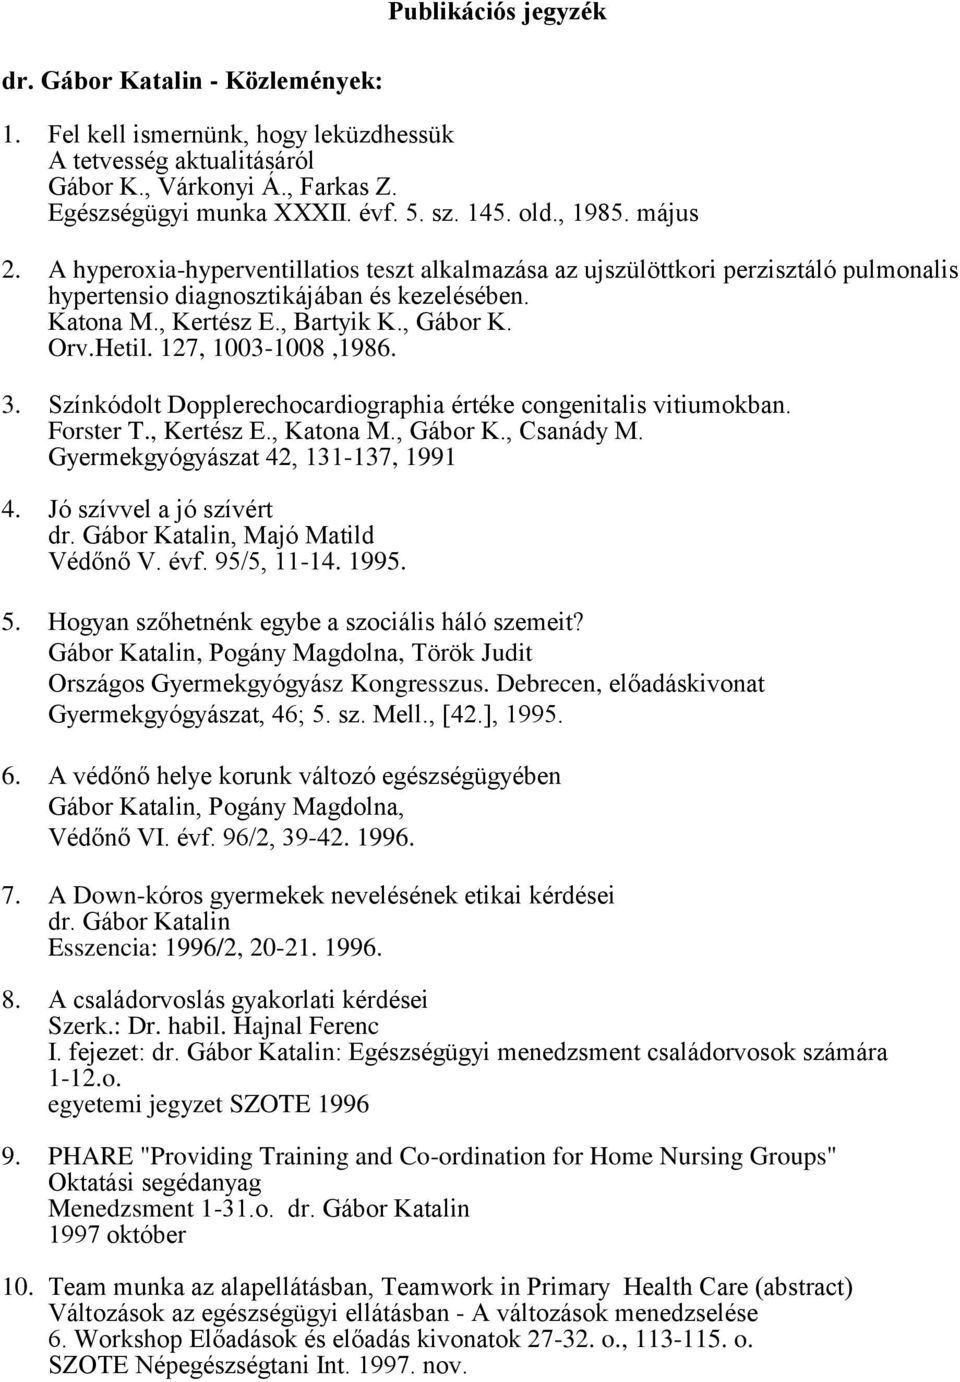 Publikációs jegyzék. dr. Gábor Katalin - Közlemények: - PDF Free Download